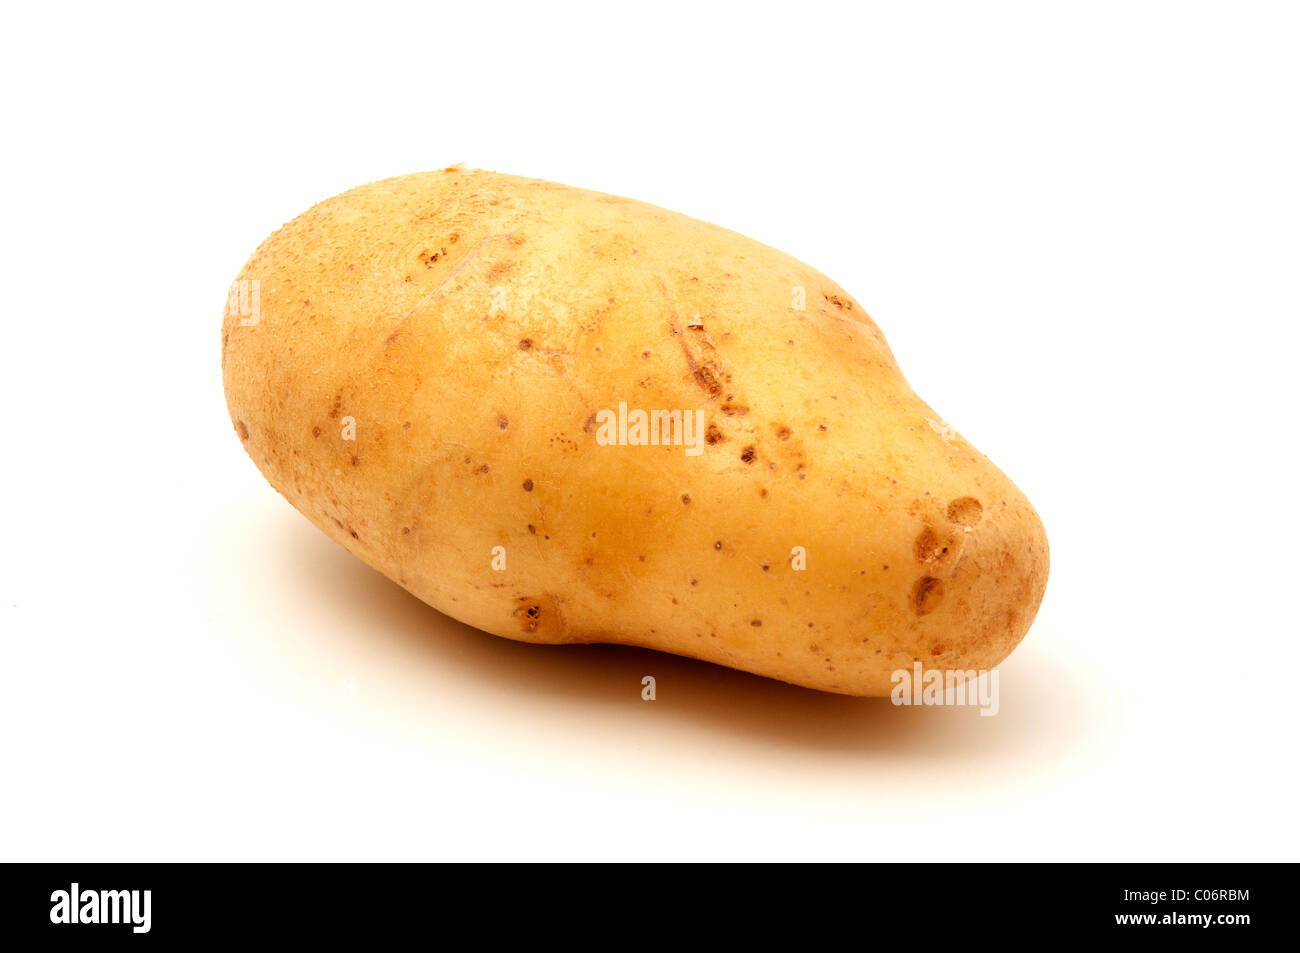 Monalisa potato on a white background Stock Photo